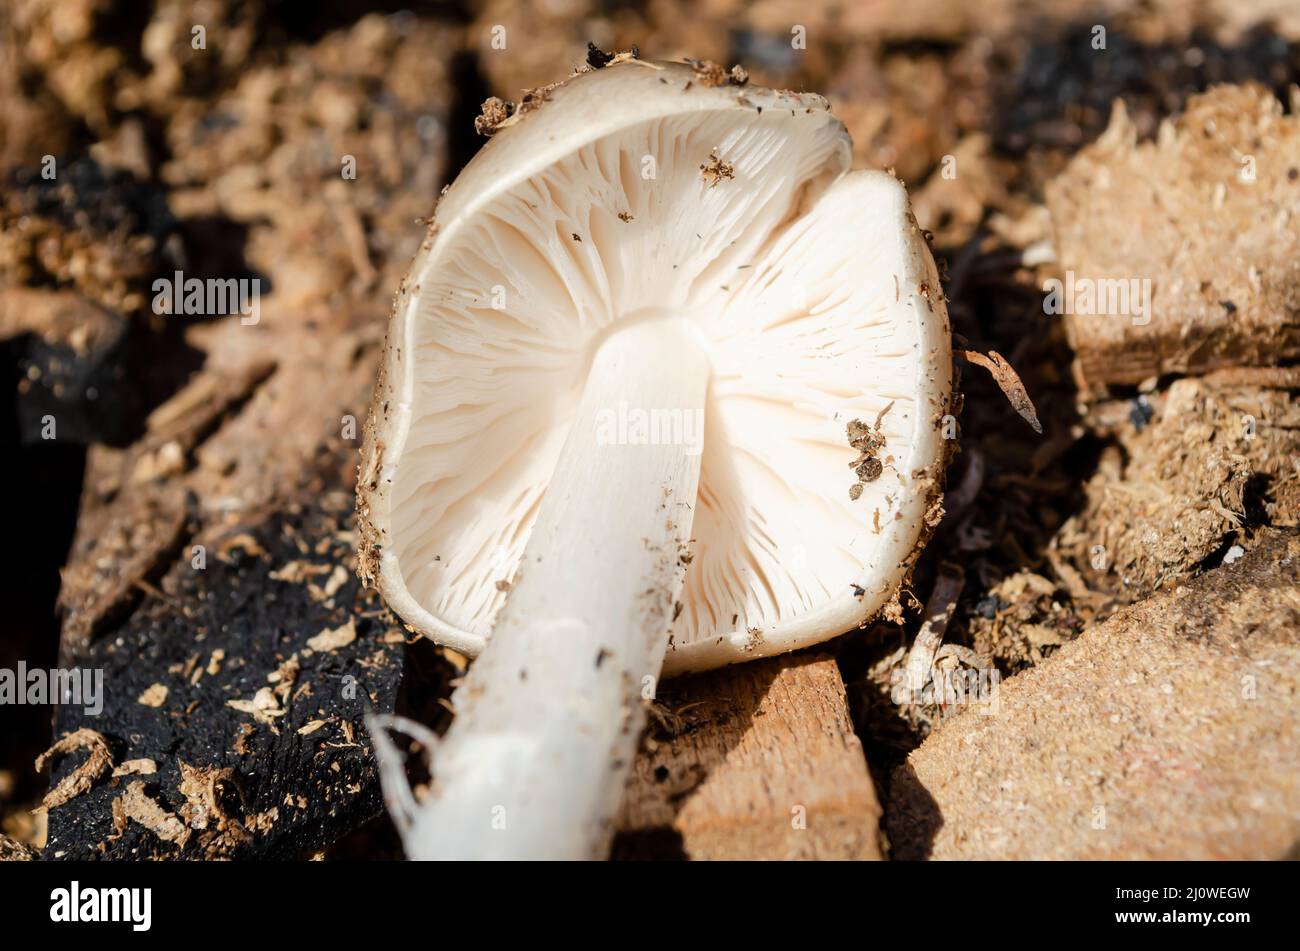 Pluteus Petasatus Mushroom Gill And Stem Stock Photo